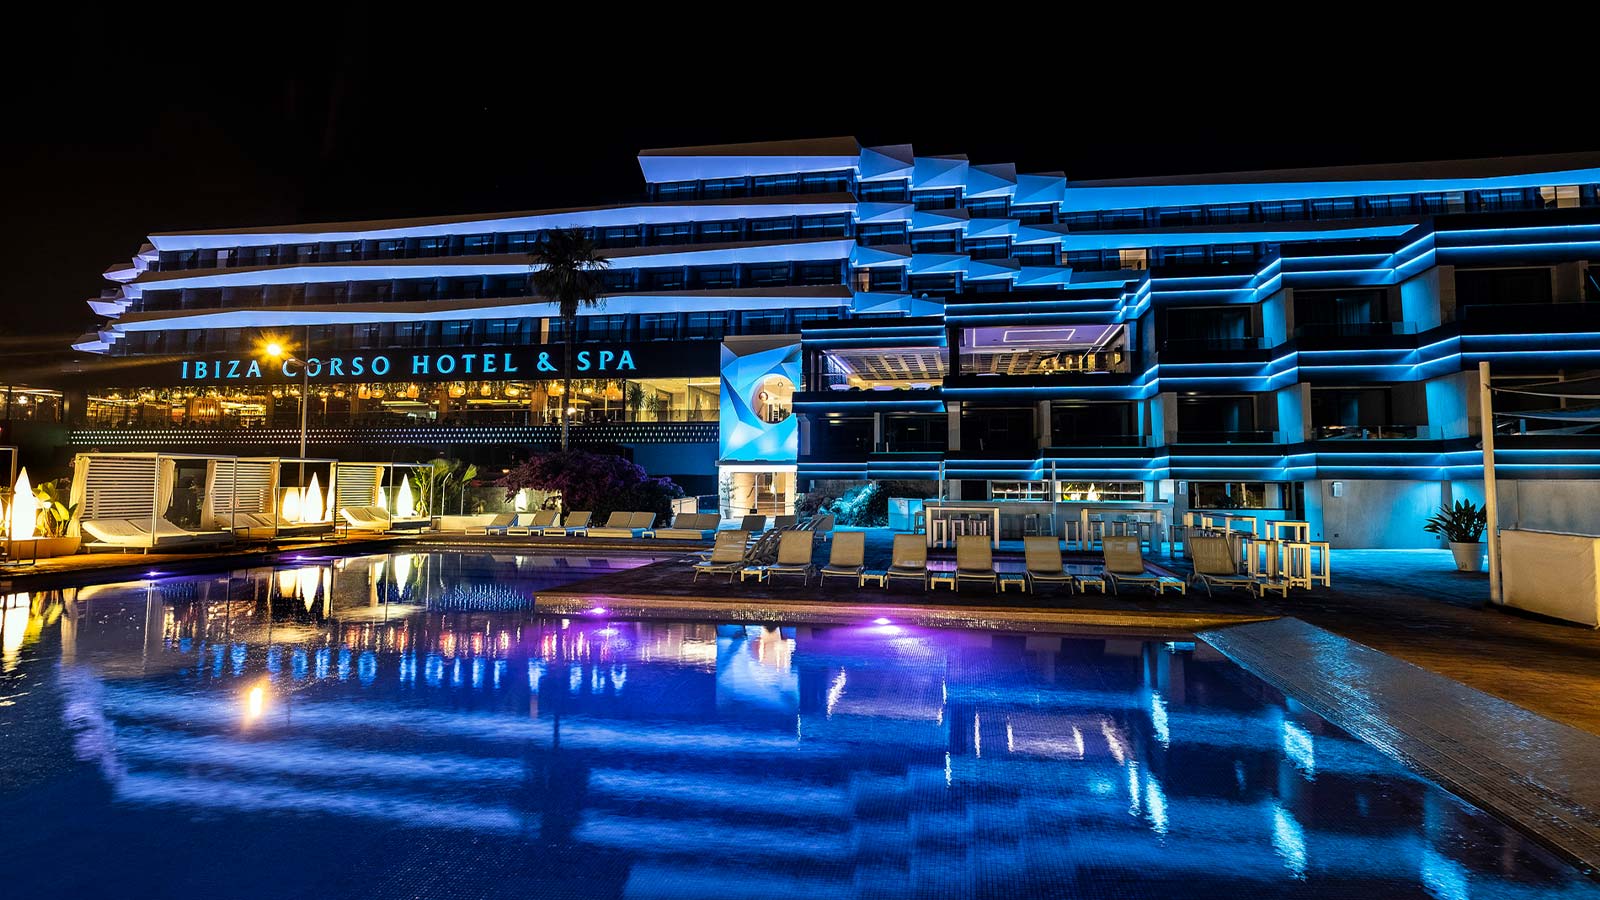 Ibiza Corso Hotel & Spa, un resort all'avanguardia nel design